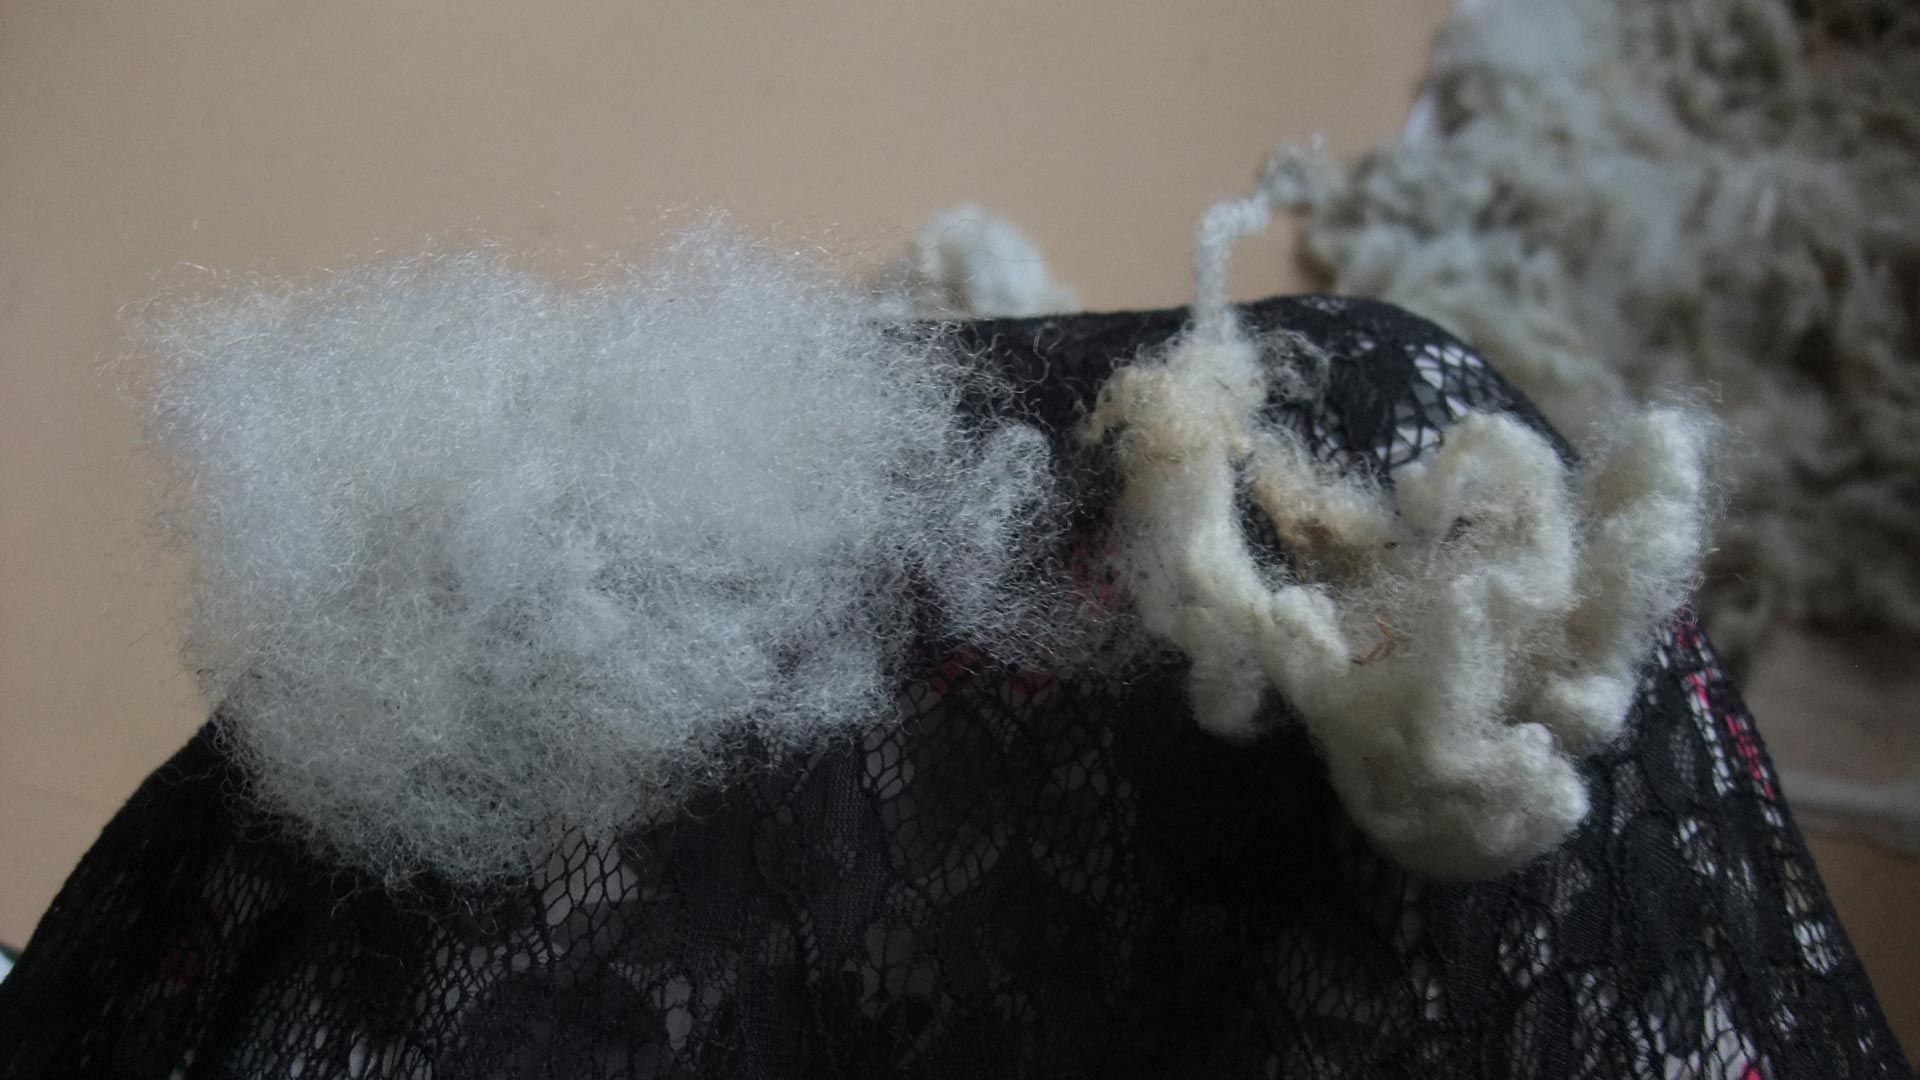 Breaking wool apart